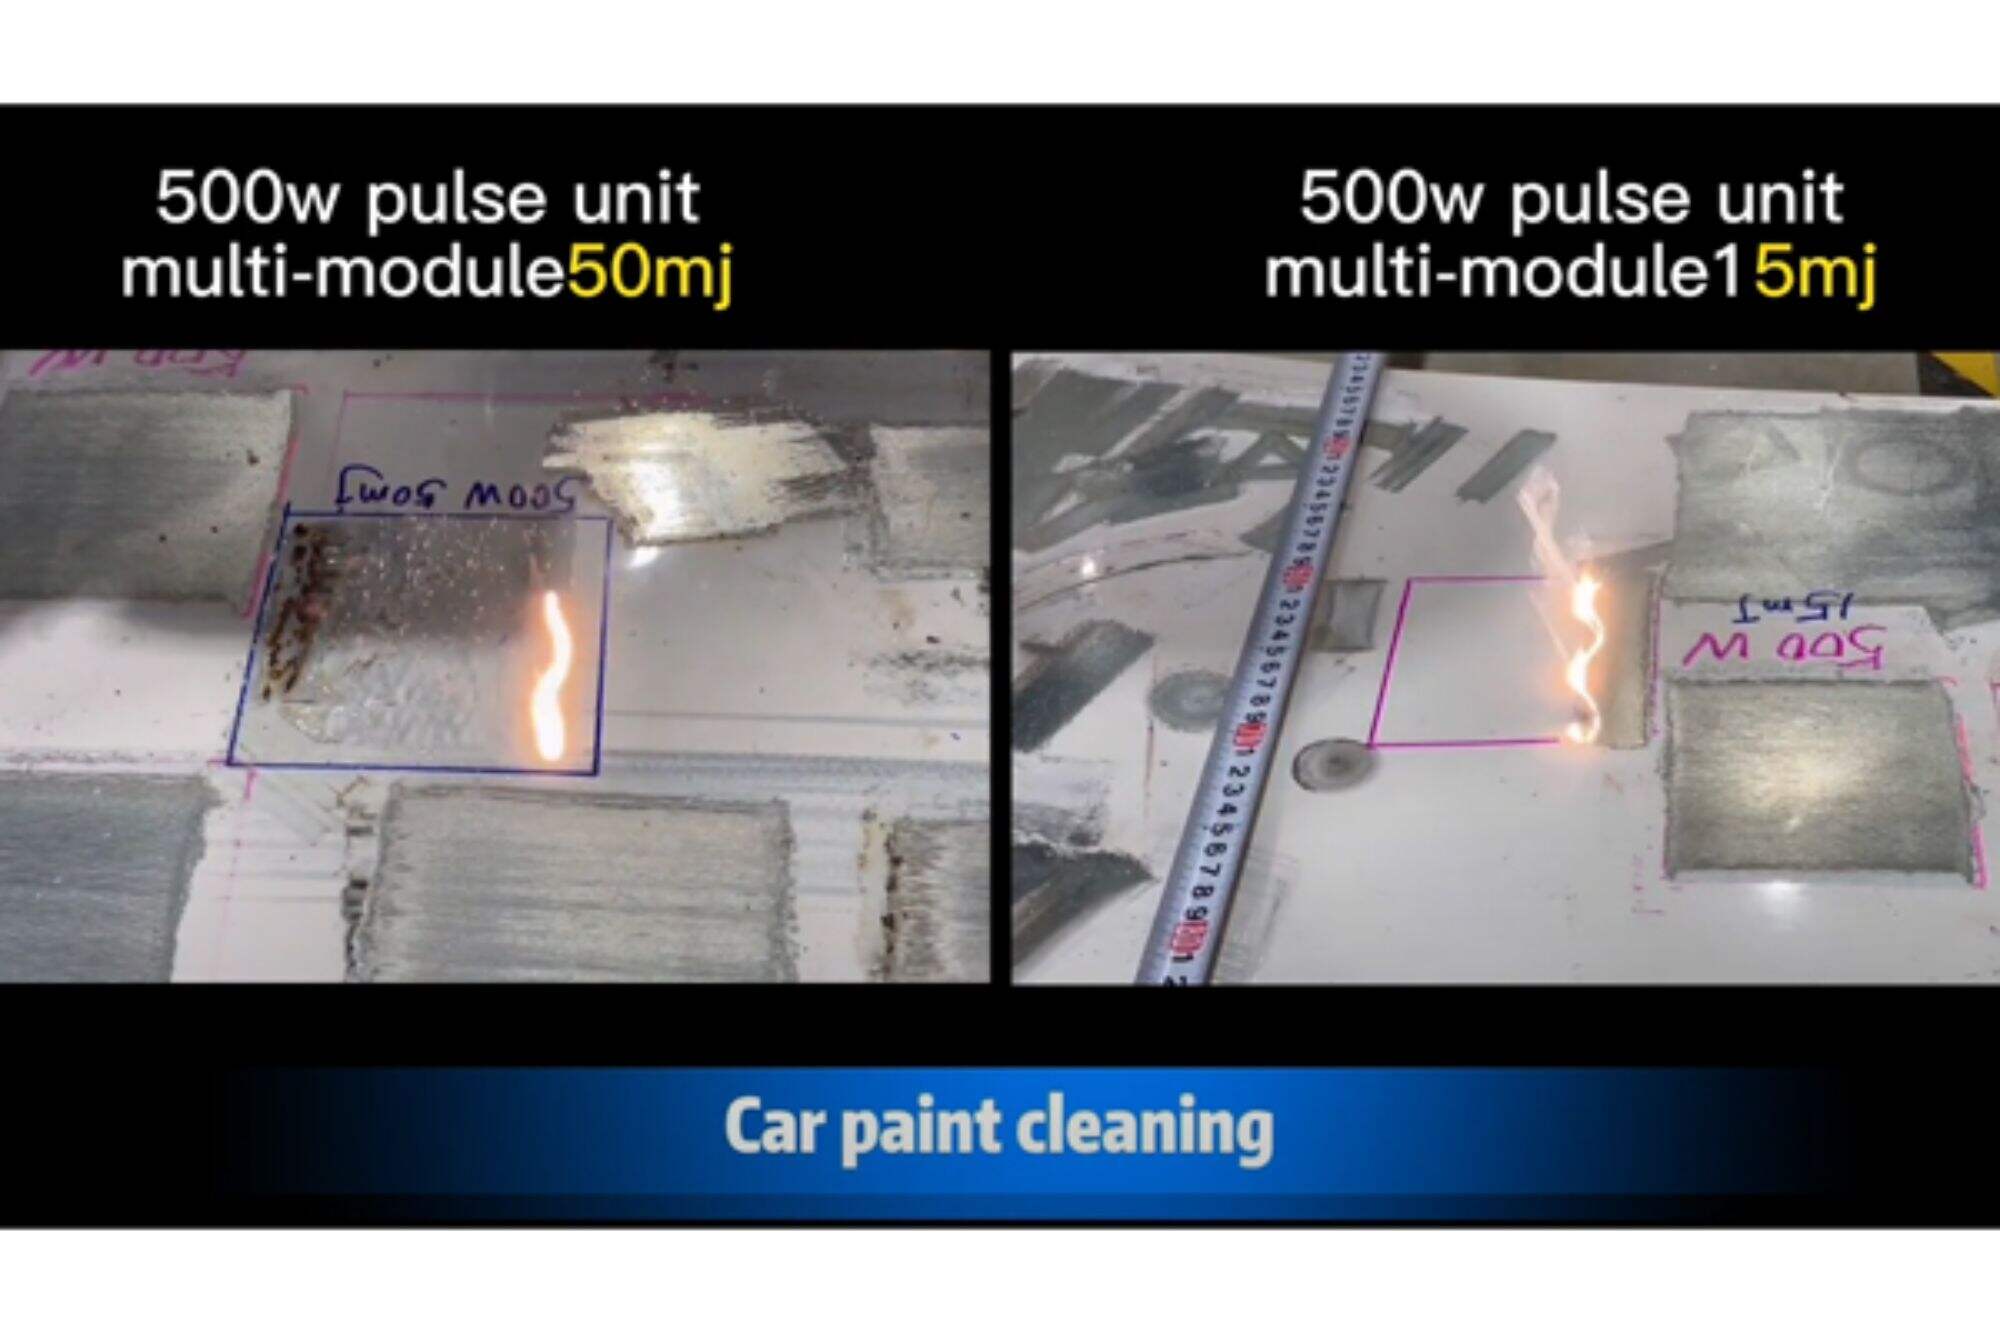 Machine de nettoyage par impulsions 50mj vs 15mj 500w pour nettoyer la peinture de voiture